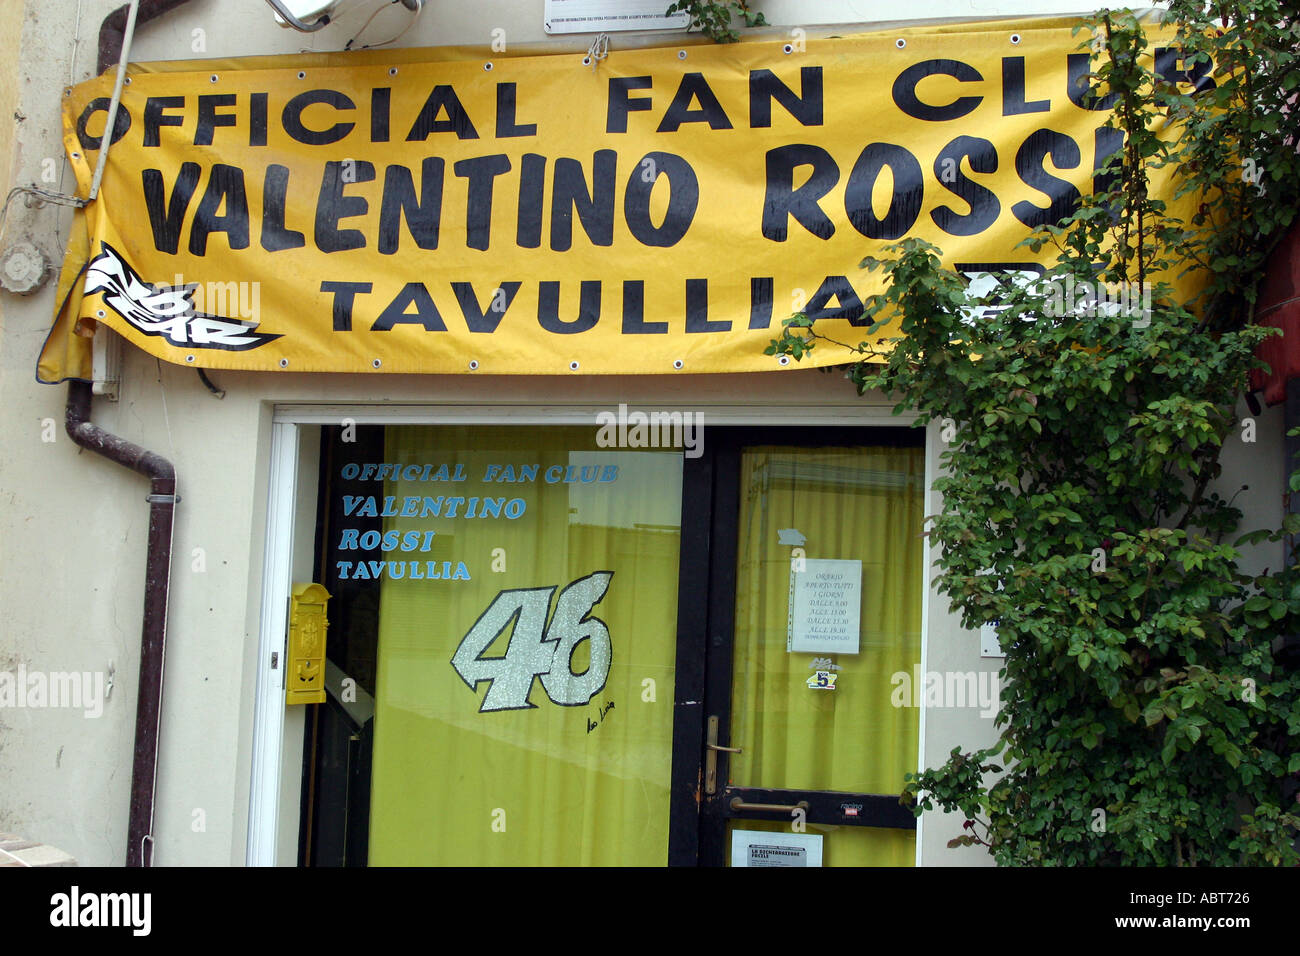 valentino rossi fan club in tavullia italy Stock Photo - Alamy